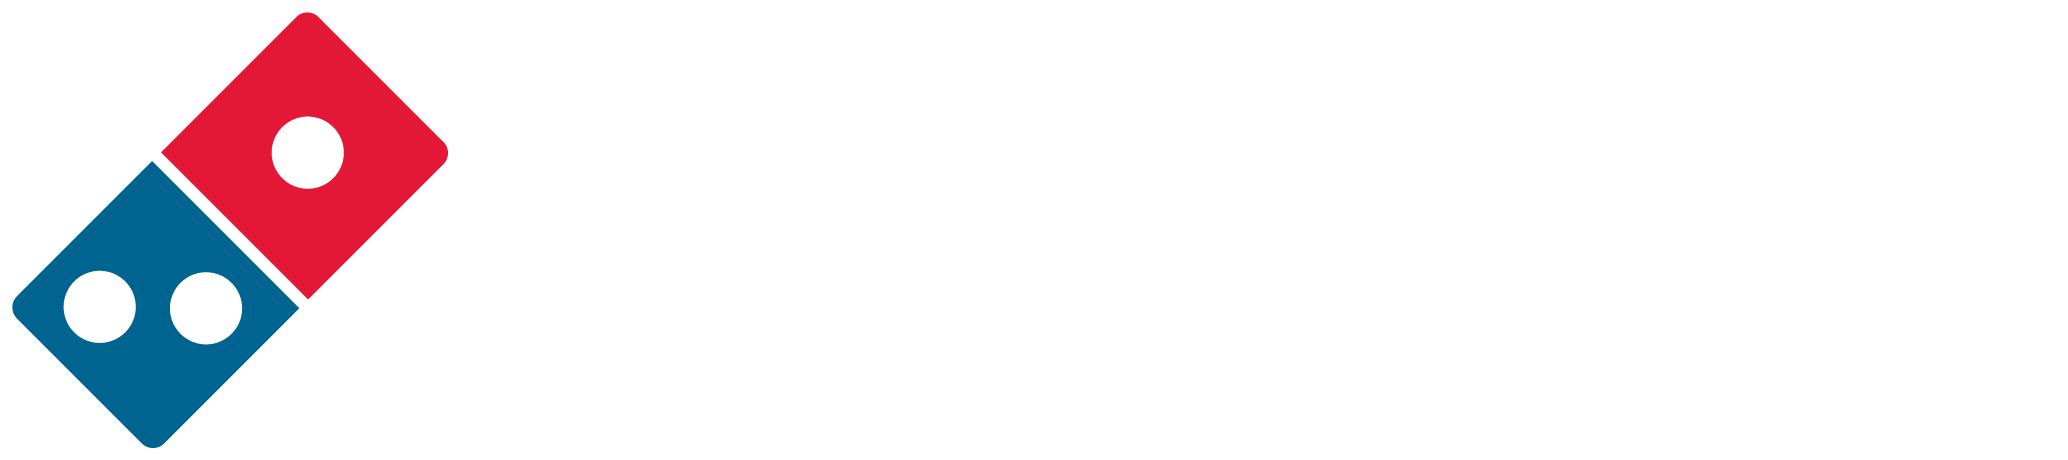 gw-dominos